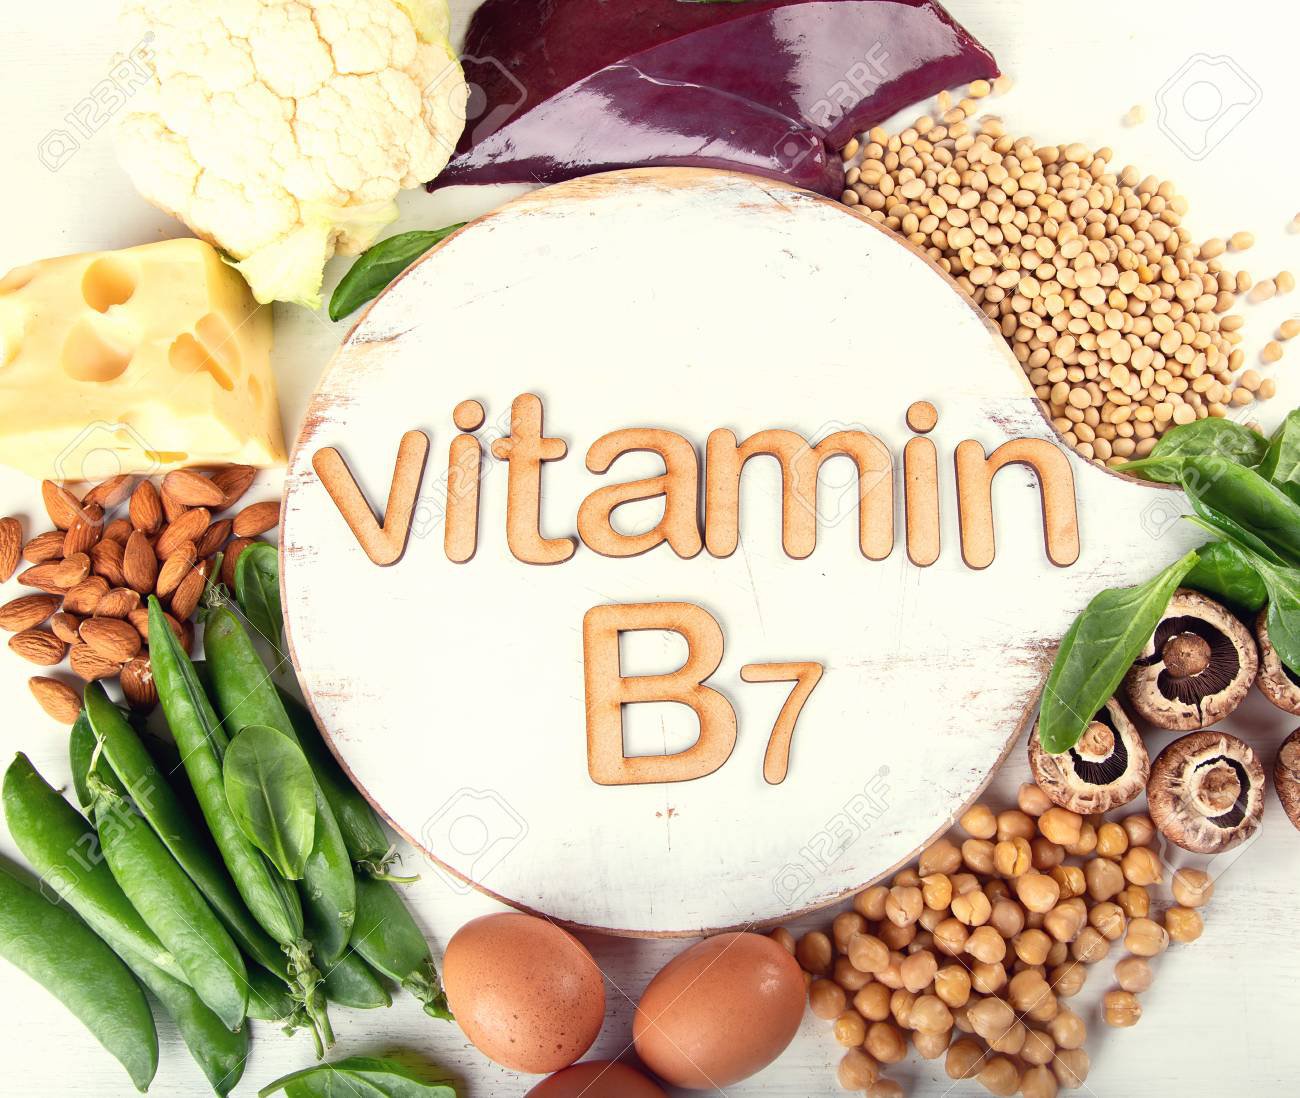 Thực phẩm nào giàu Vitamin B7?